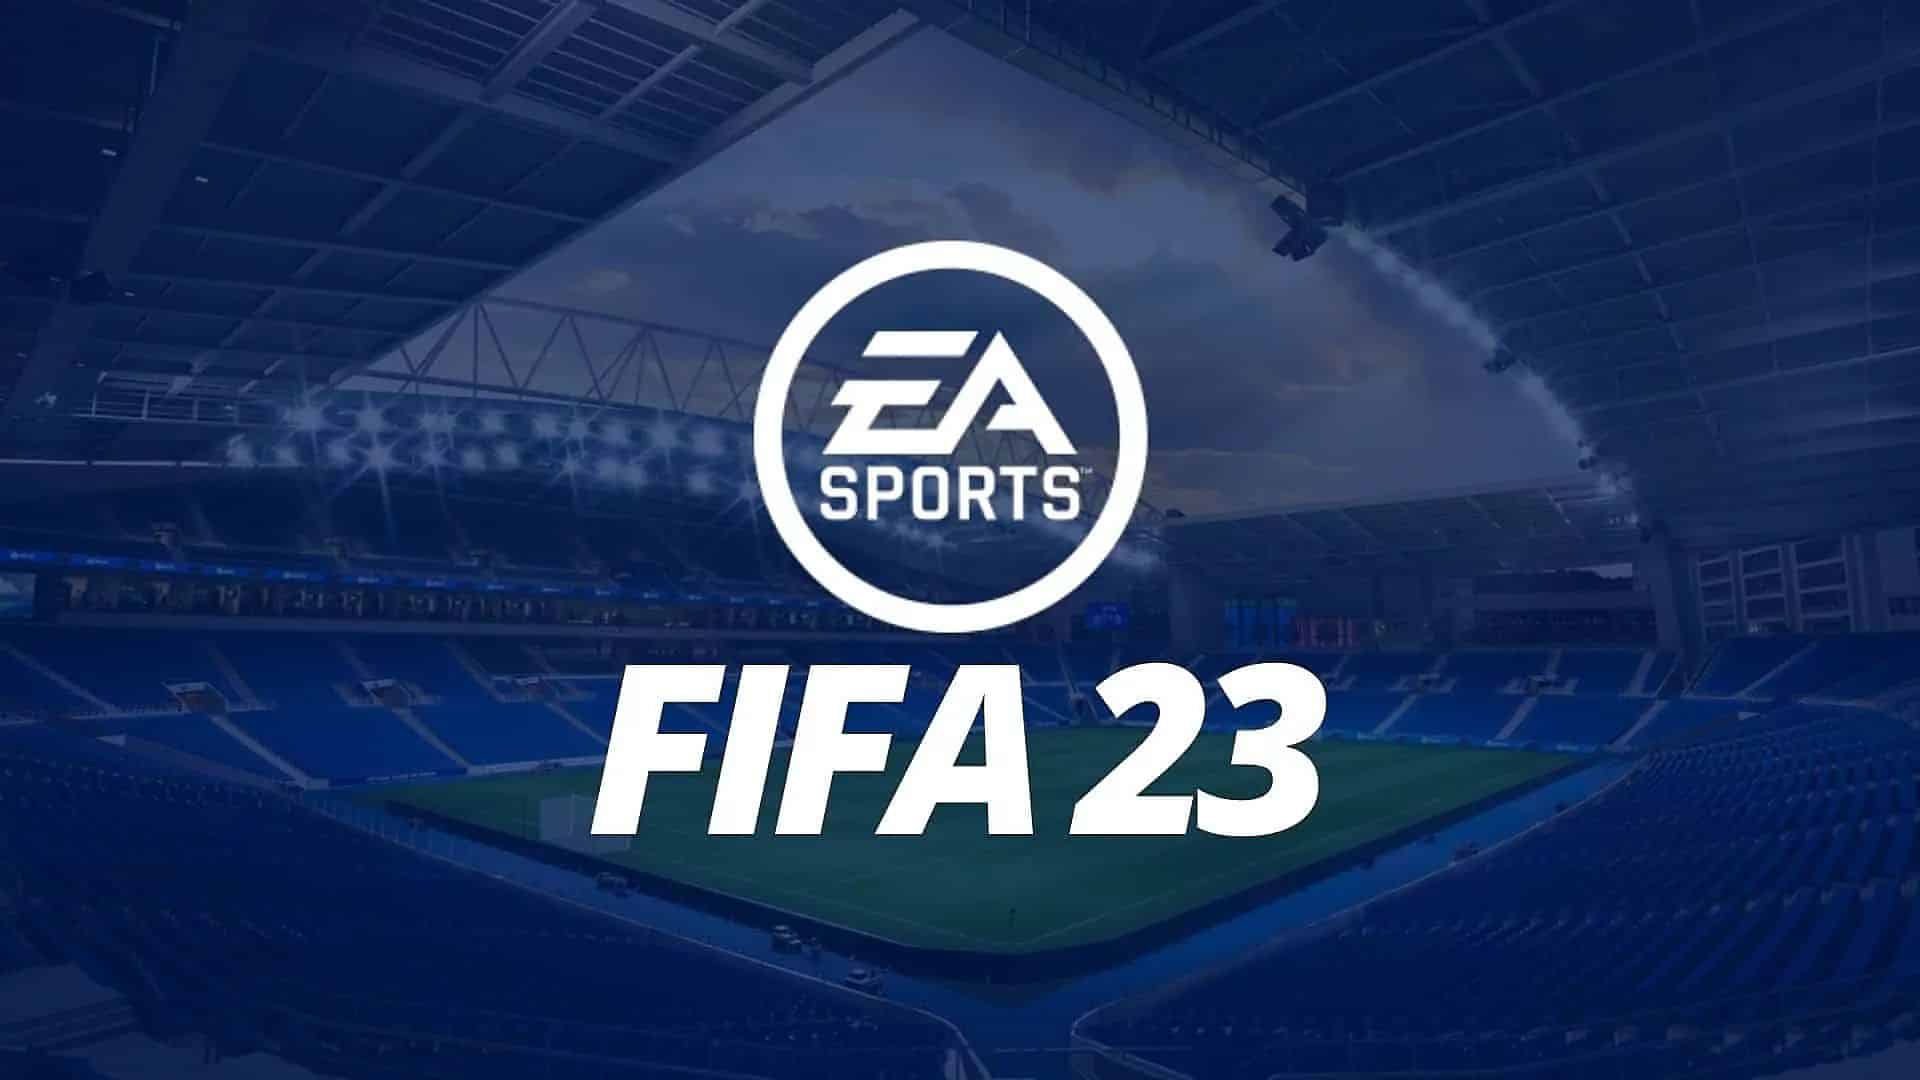 Глубокое погружение FIFA 23 Ultimate Team ™